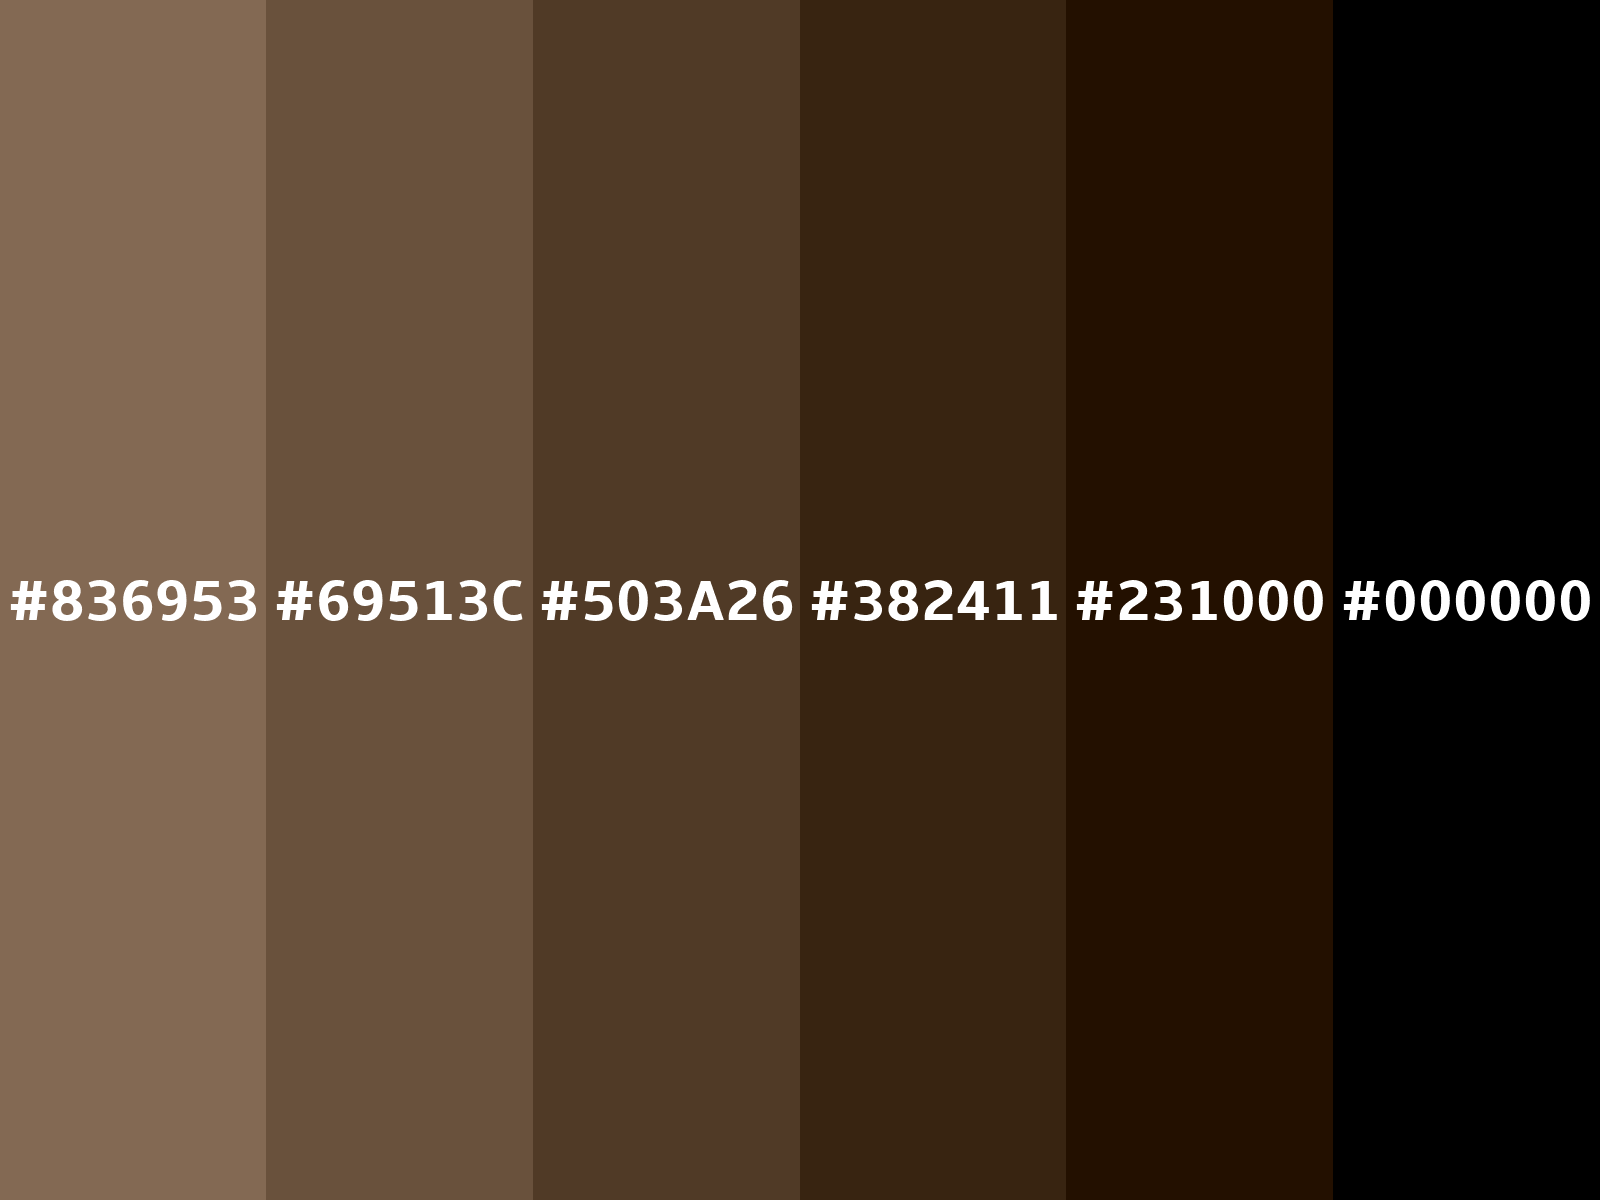 Converting Colors - Pastel brown